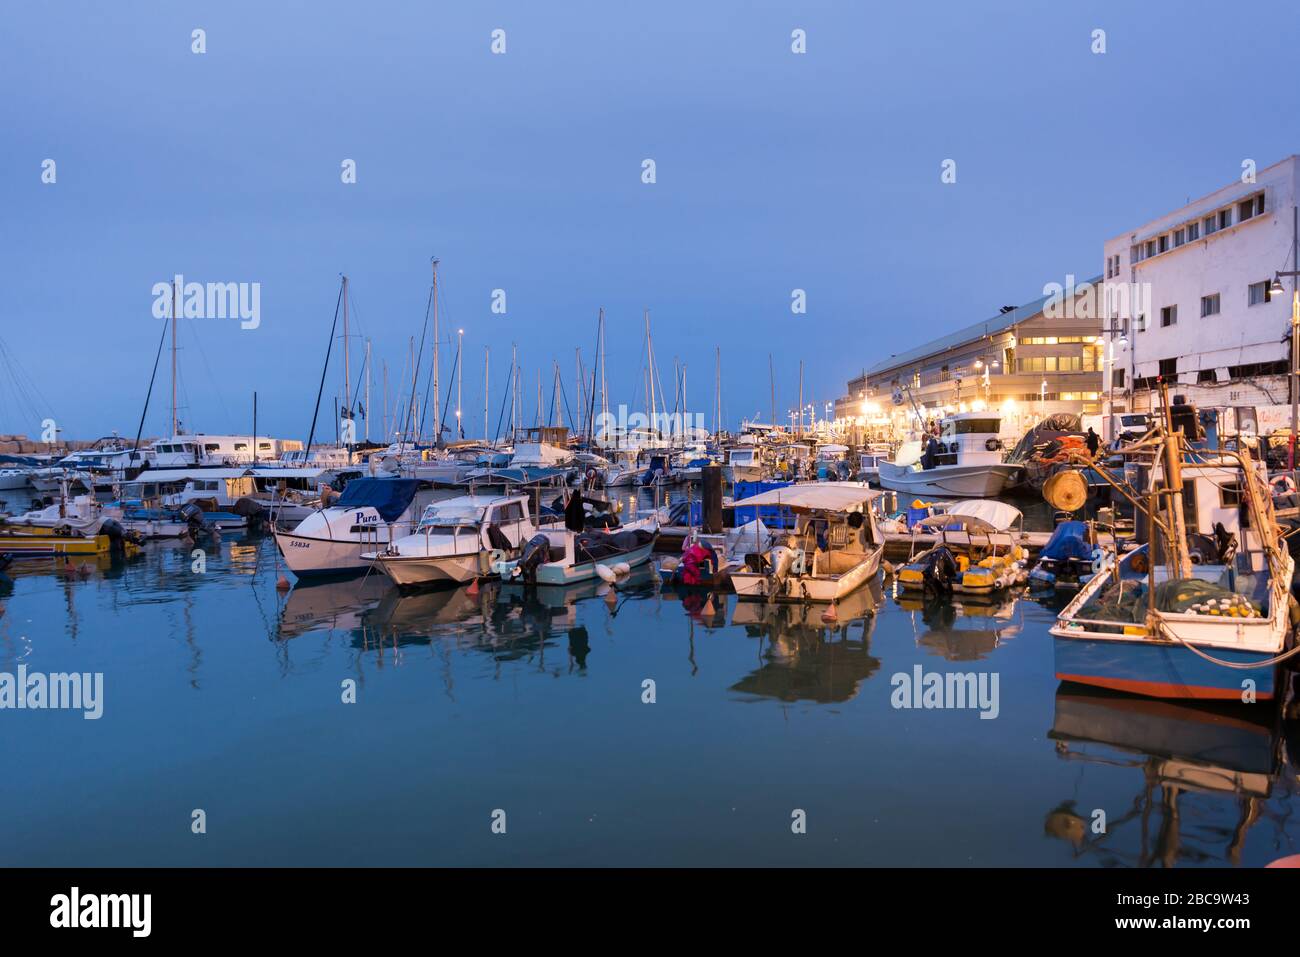 Jaffa port view, Israel Stock Photo